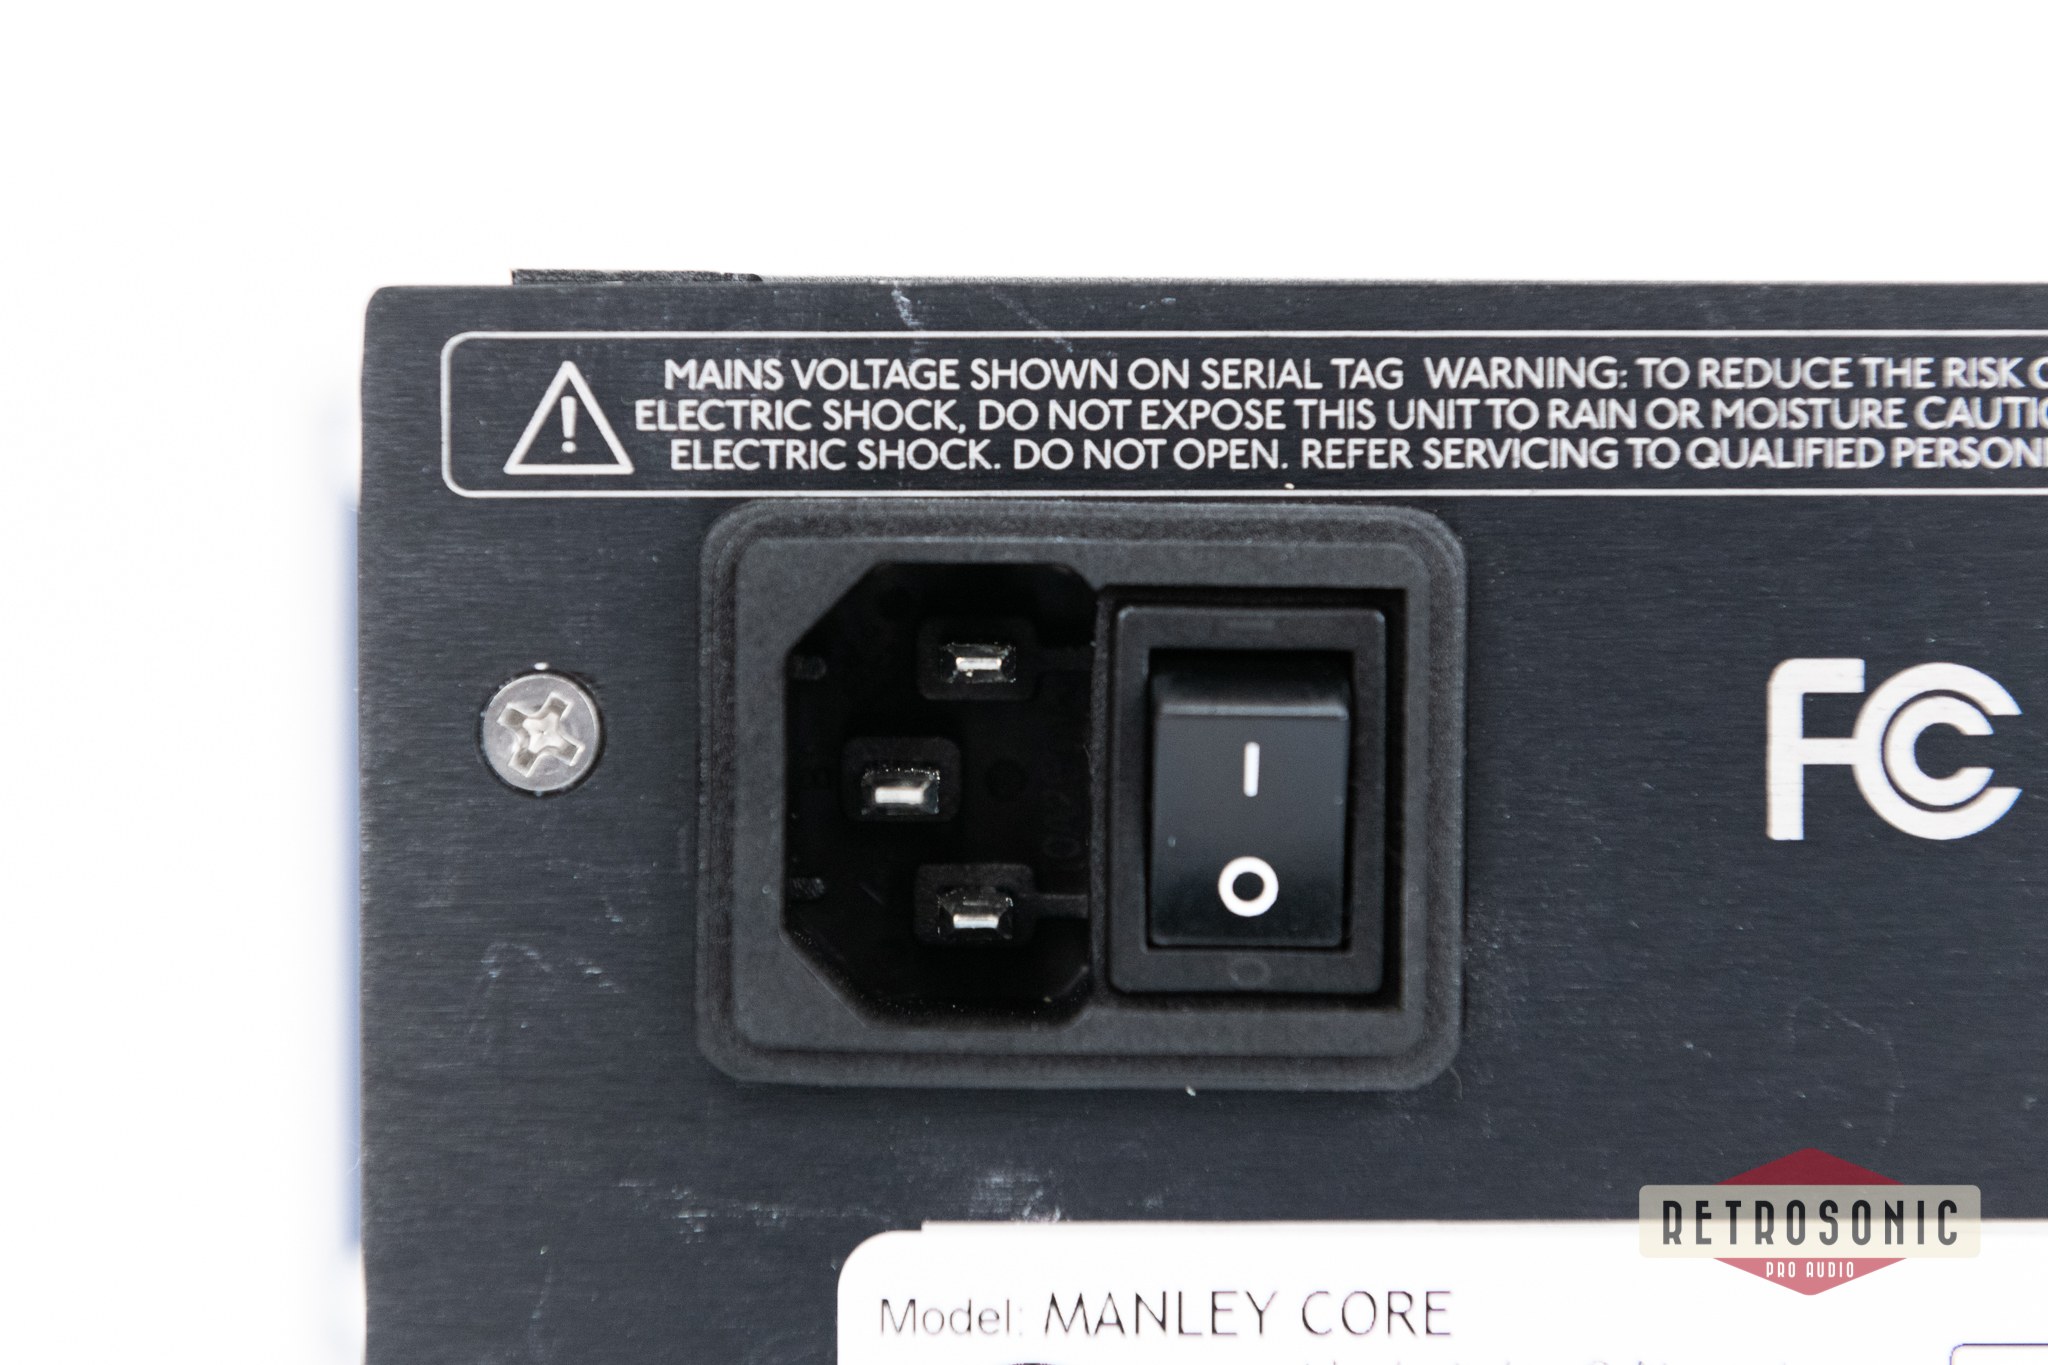 Manley Core